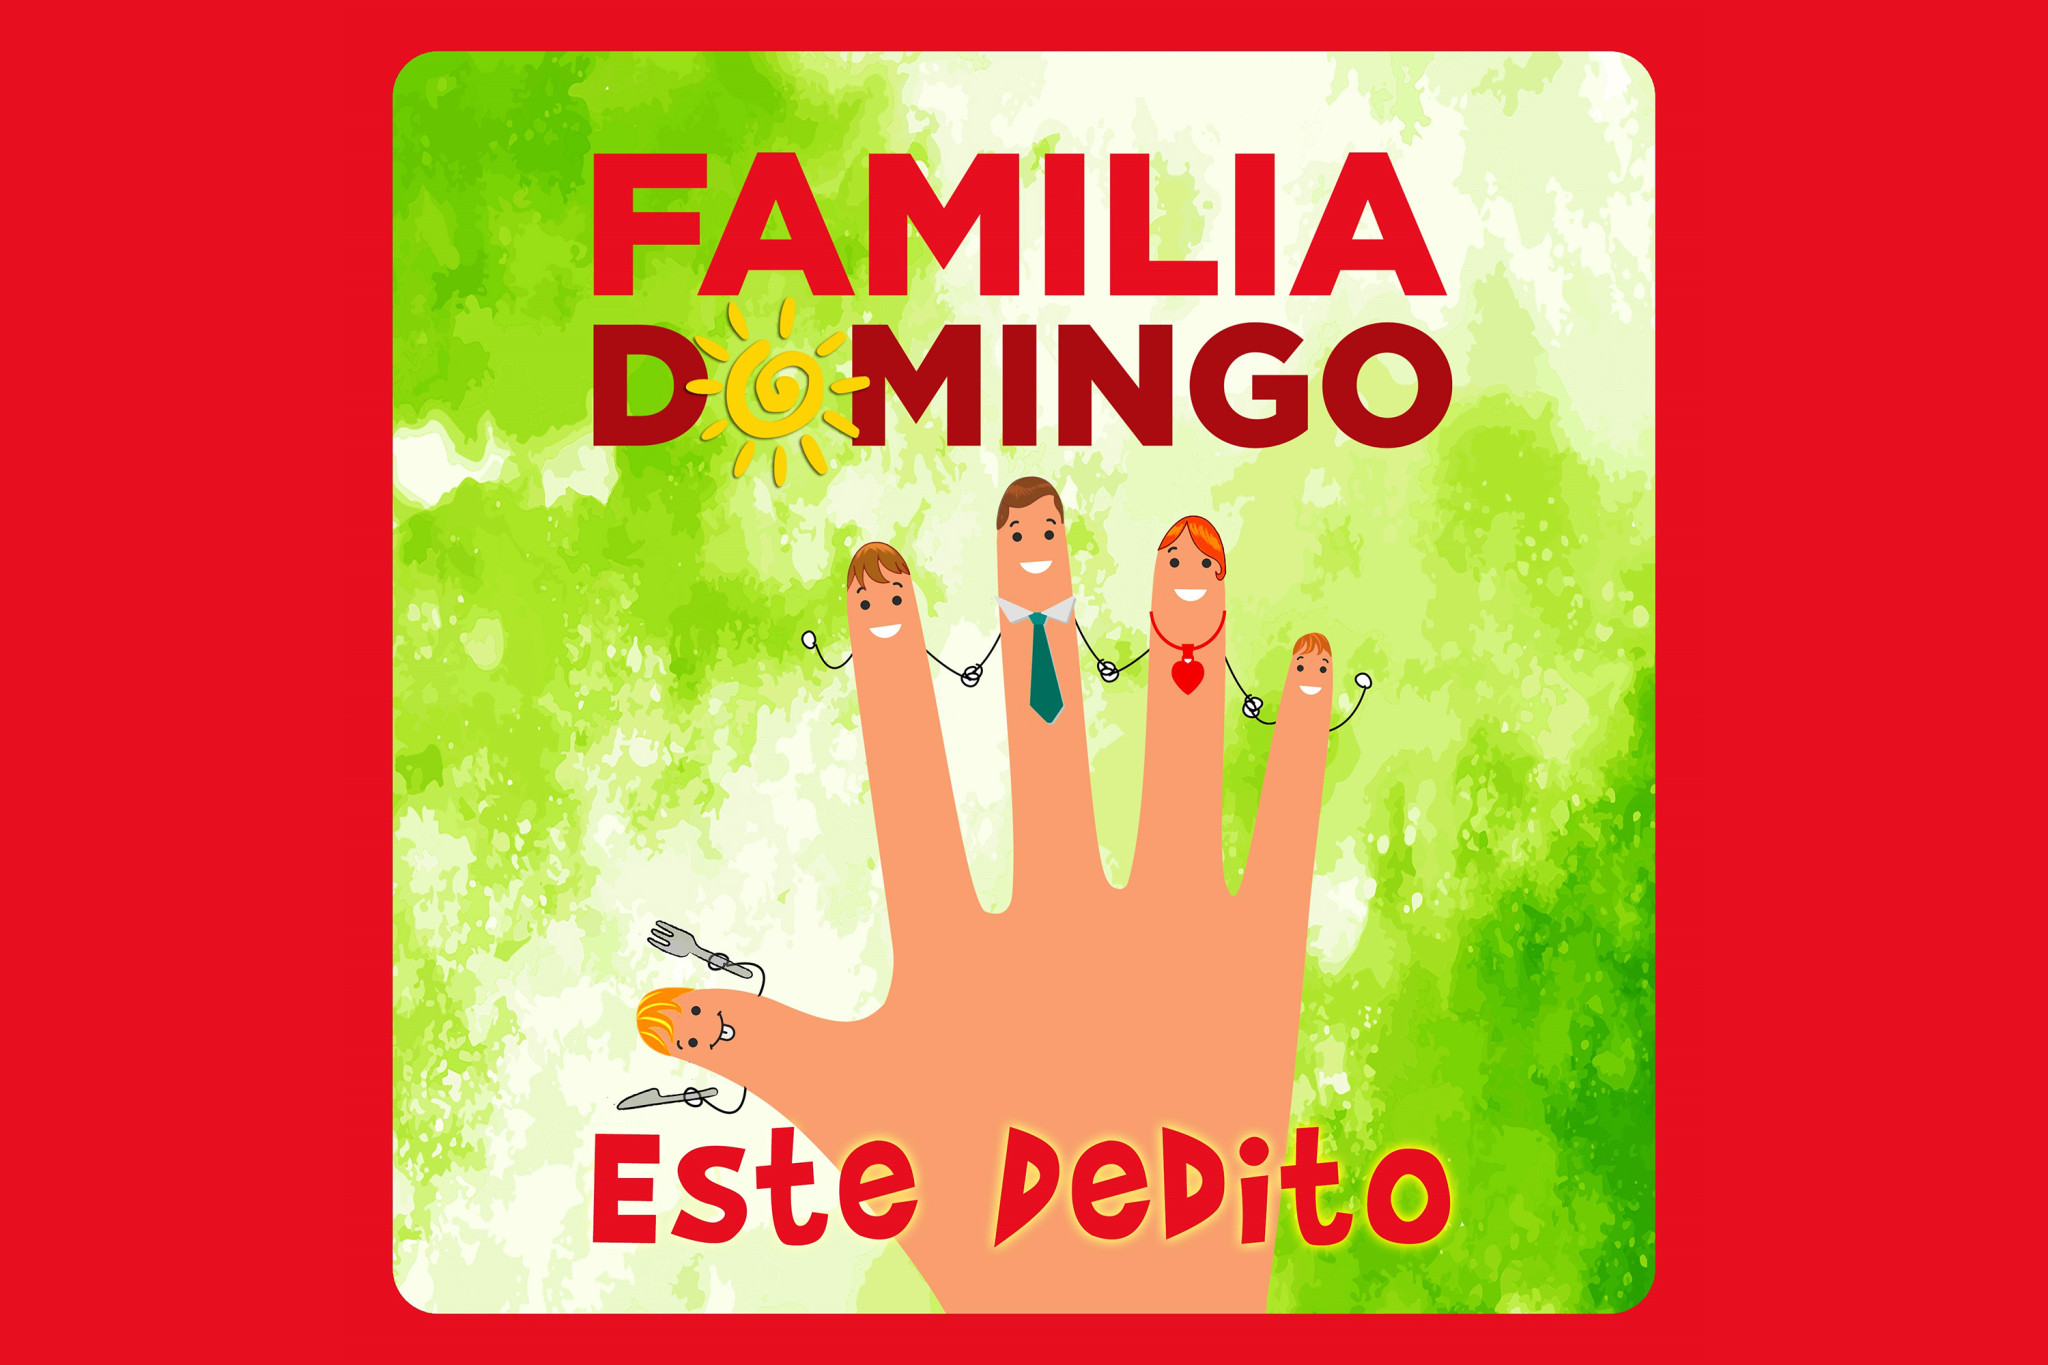 Este Dedito – der Fünf-Finger Song von Familia Domingo